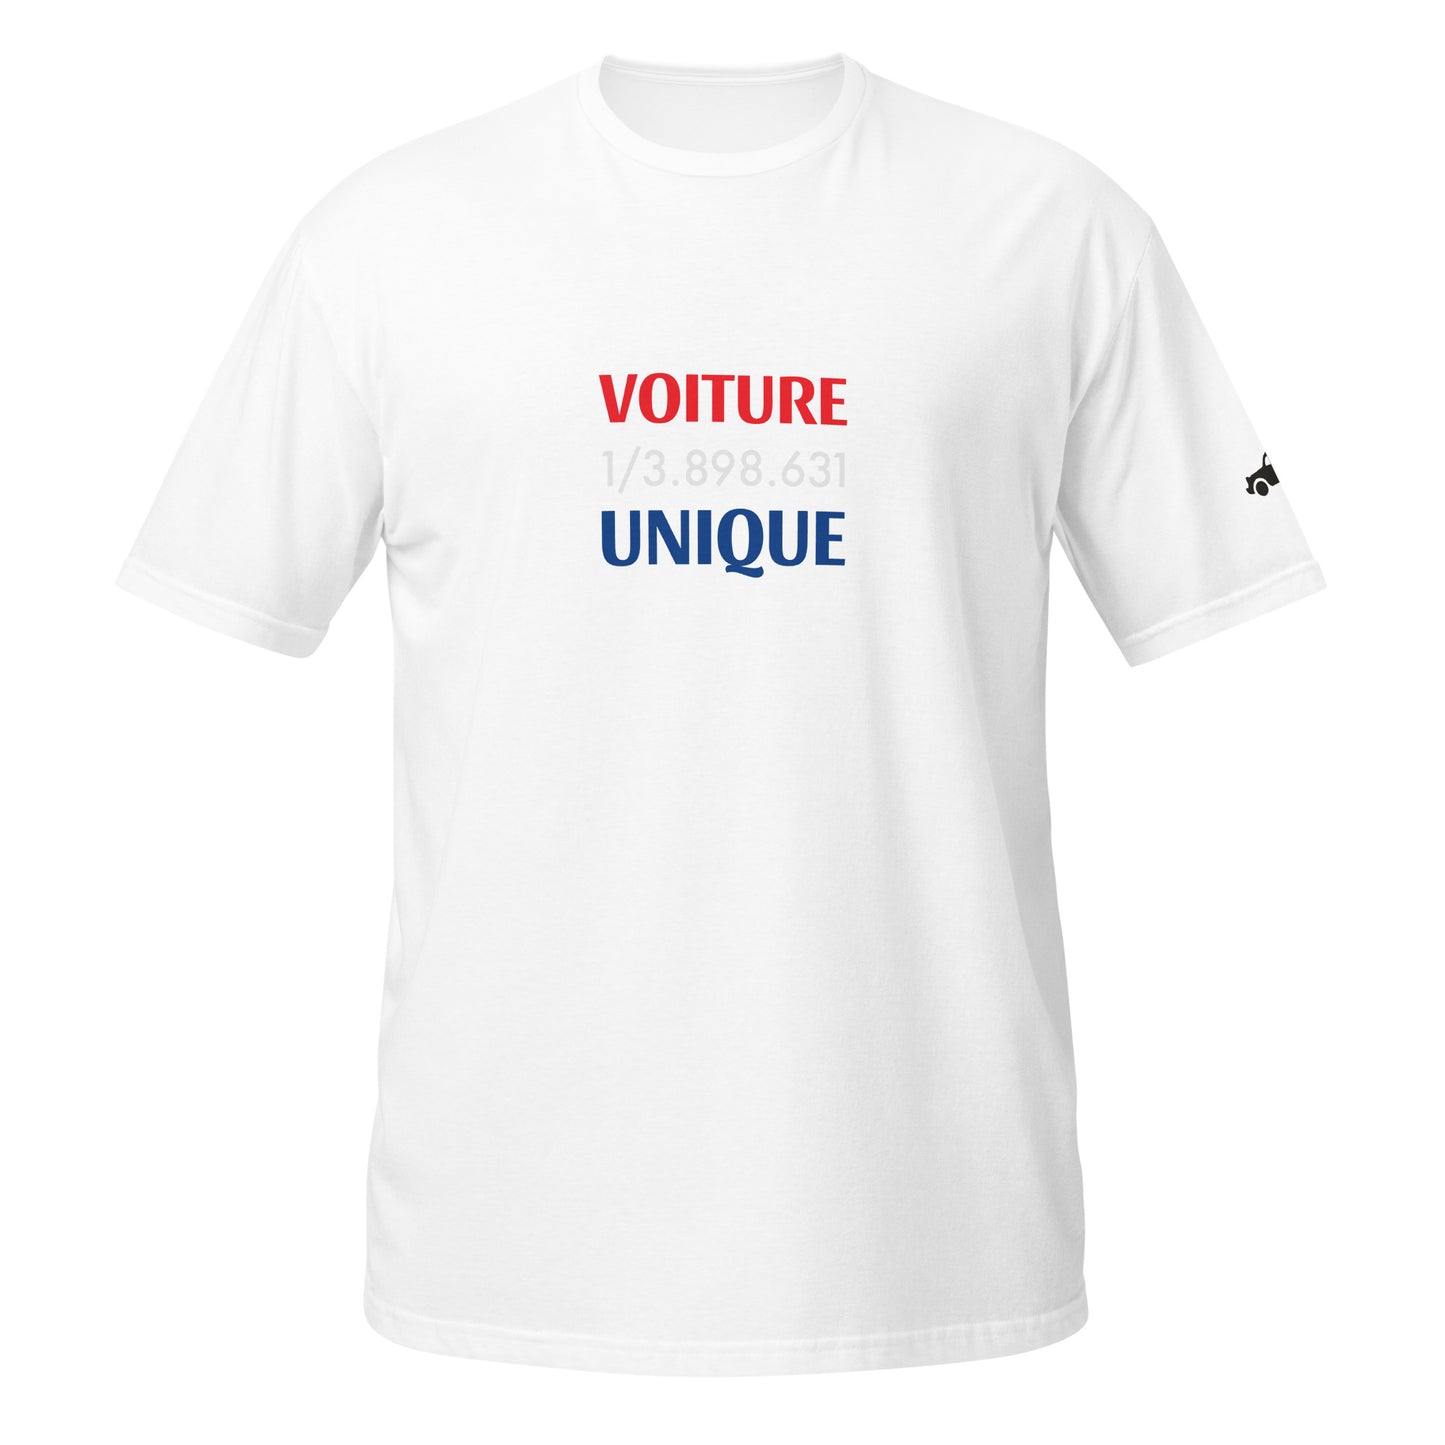 1/3.898.631 Voiture Unique Citroën 2cv T-shirt unisex - Black, Navy or White